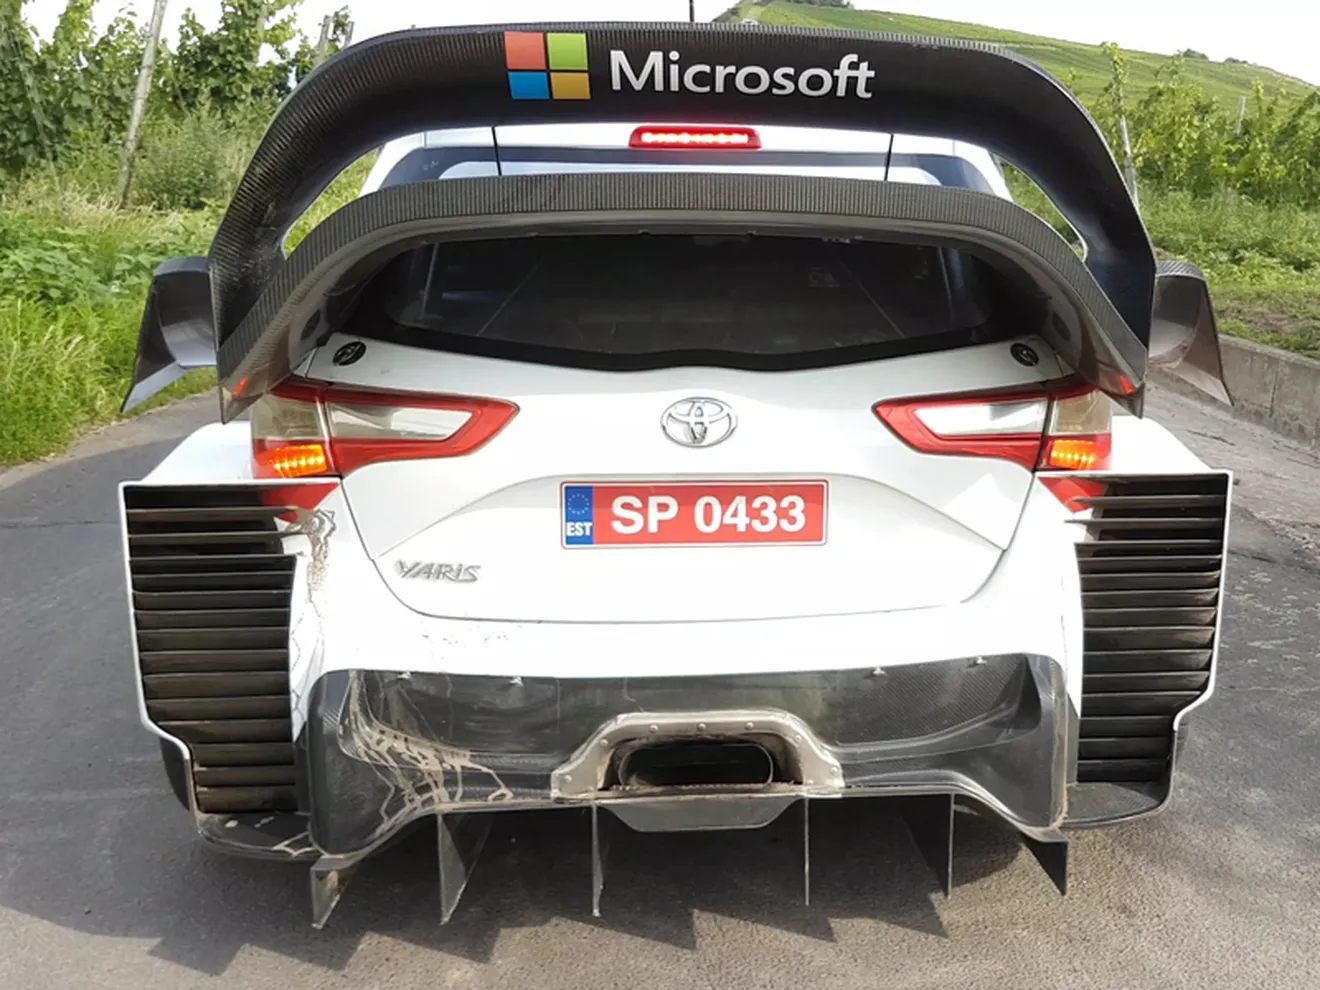 Test de Toyota y M-Sport para preparar el Rally de Alemania